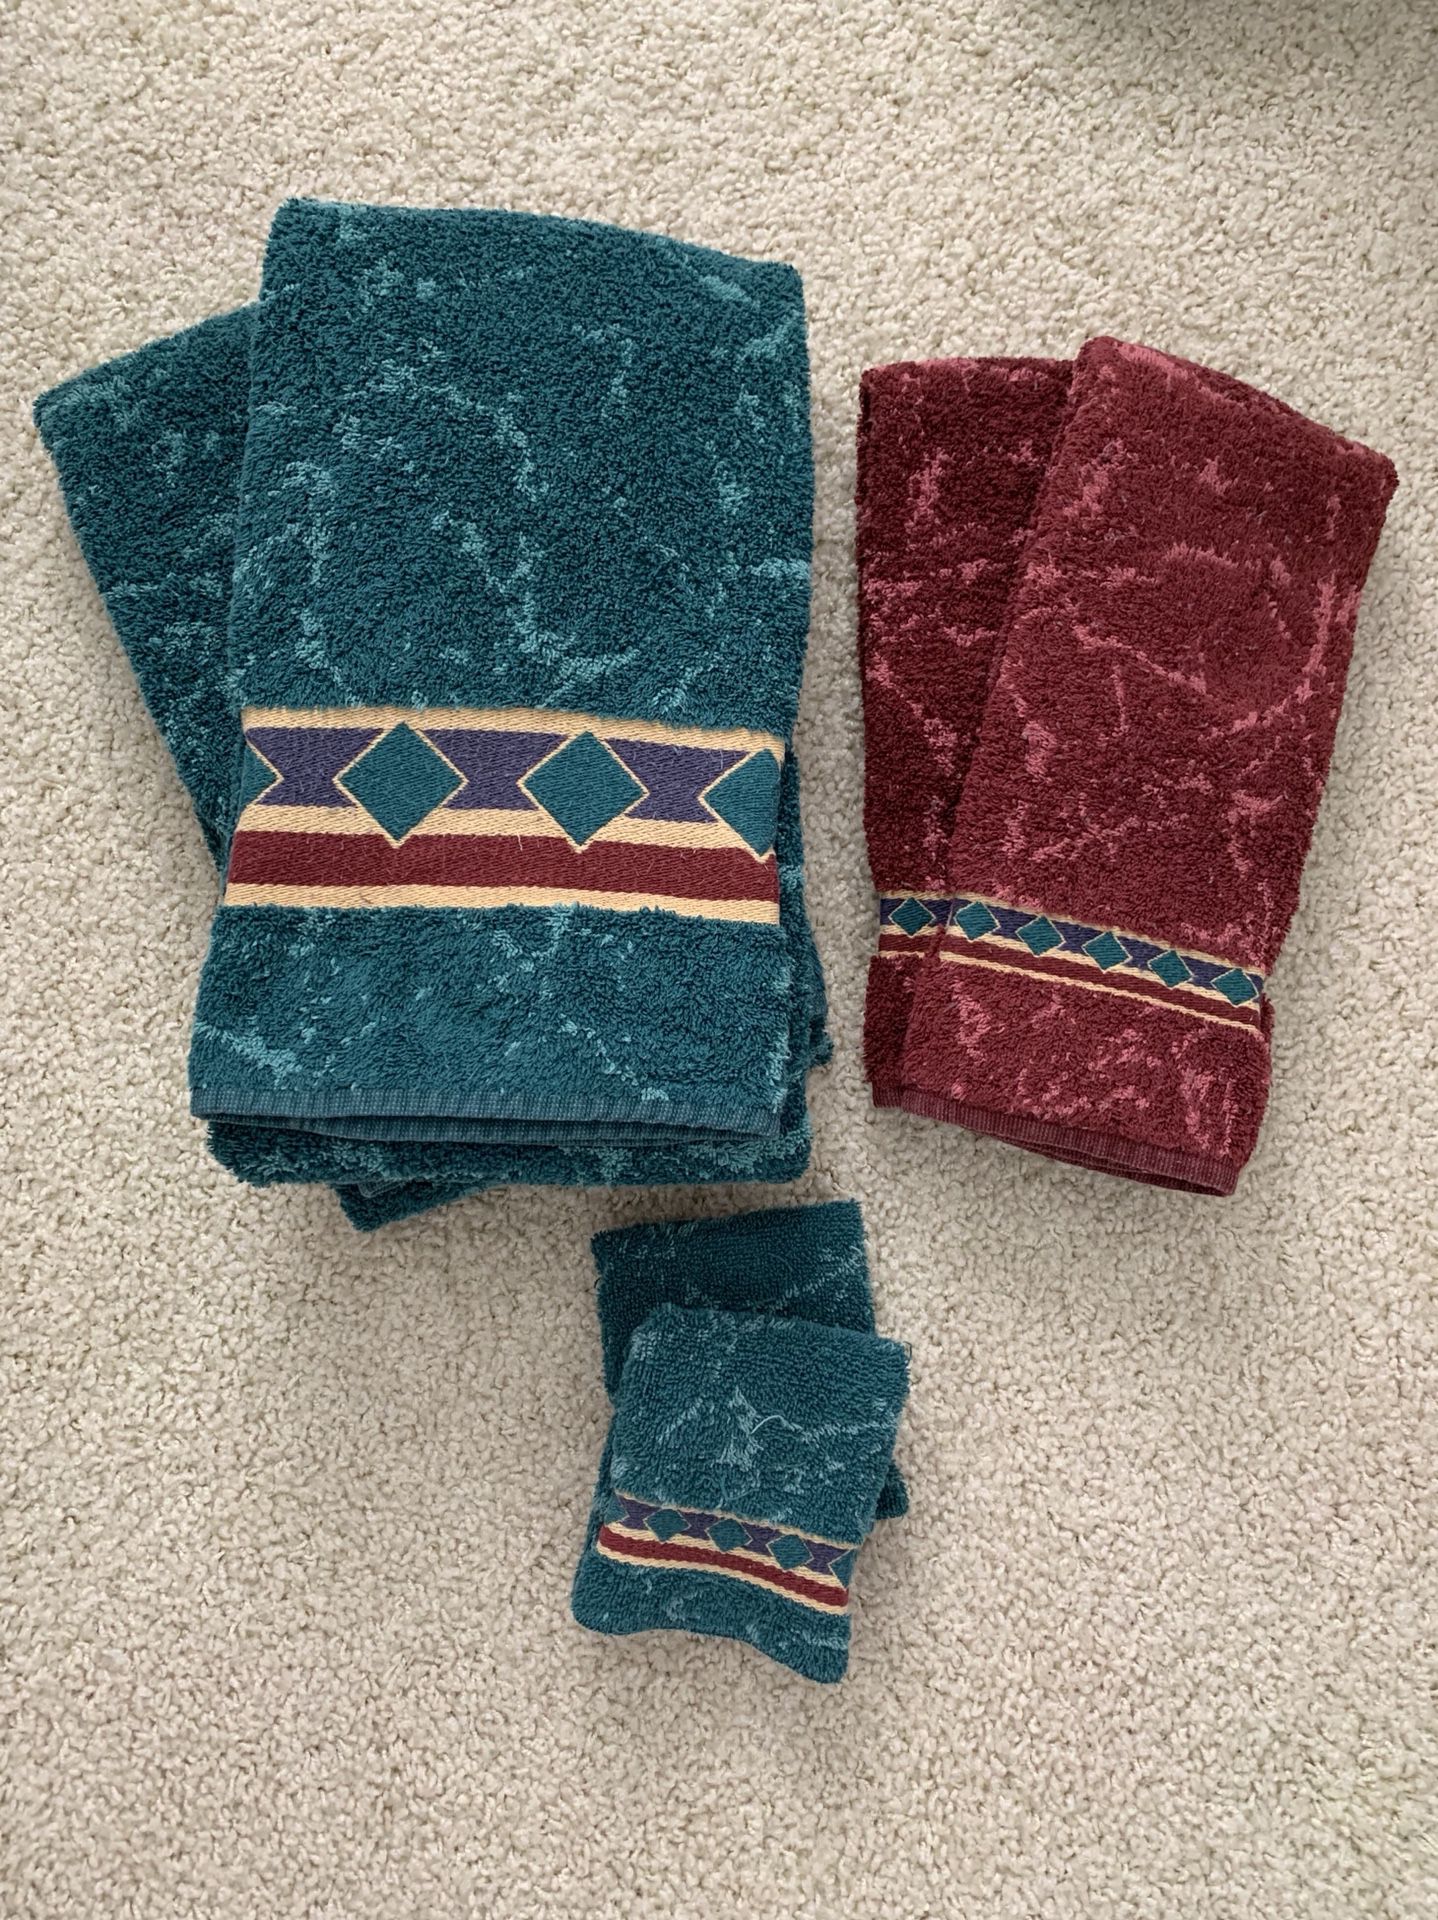 6 piece decorative bath towel set